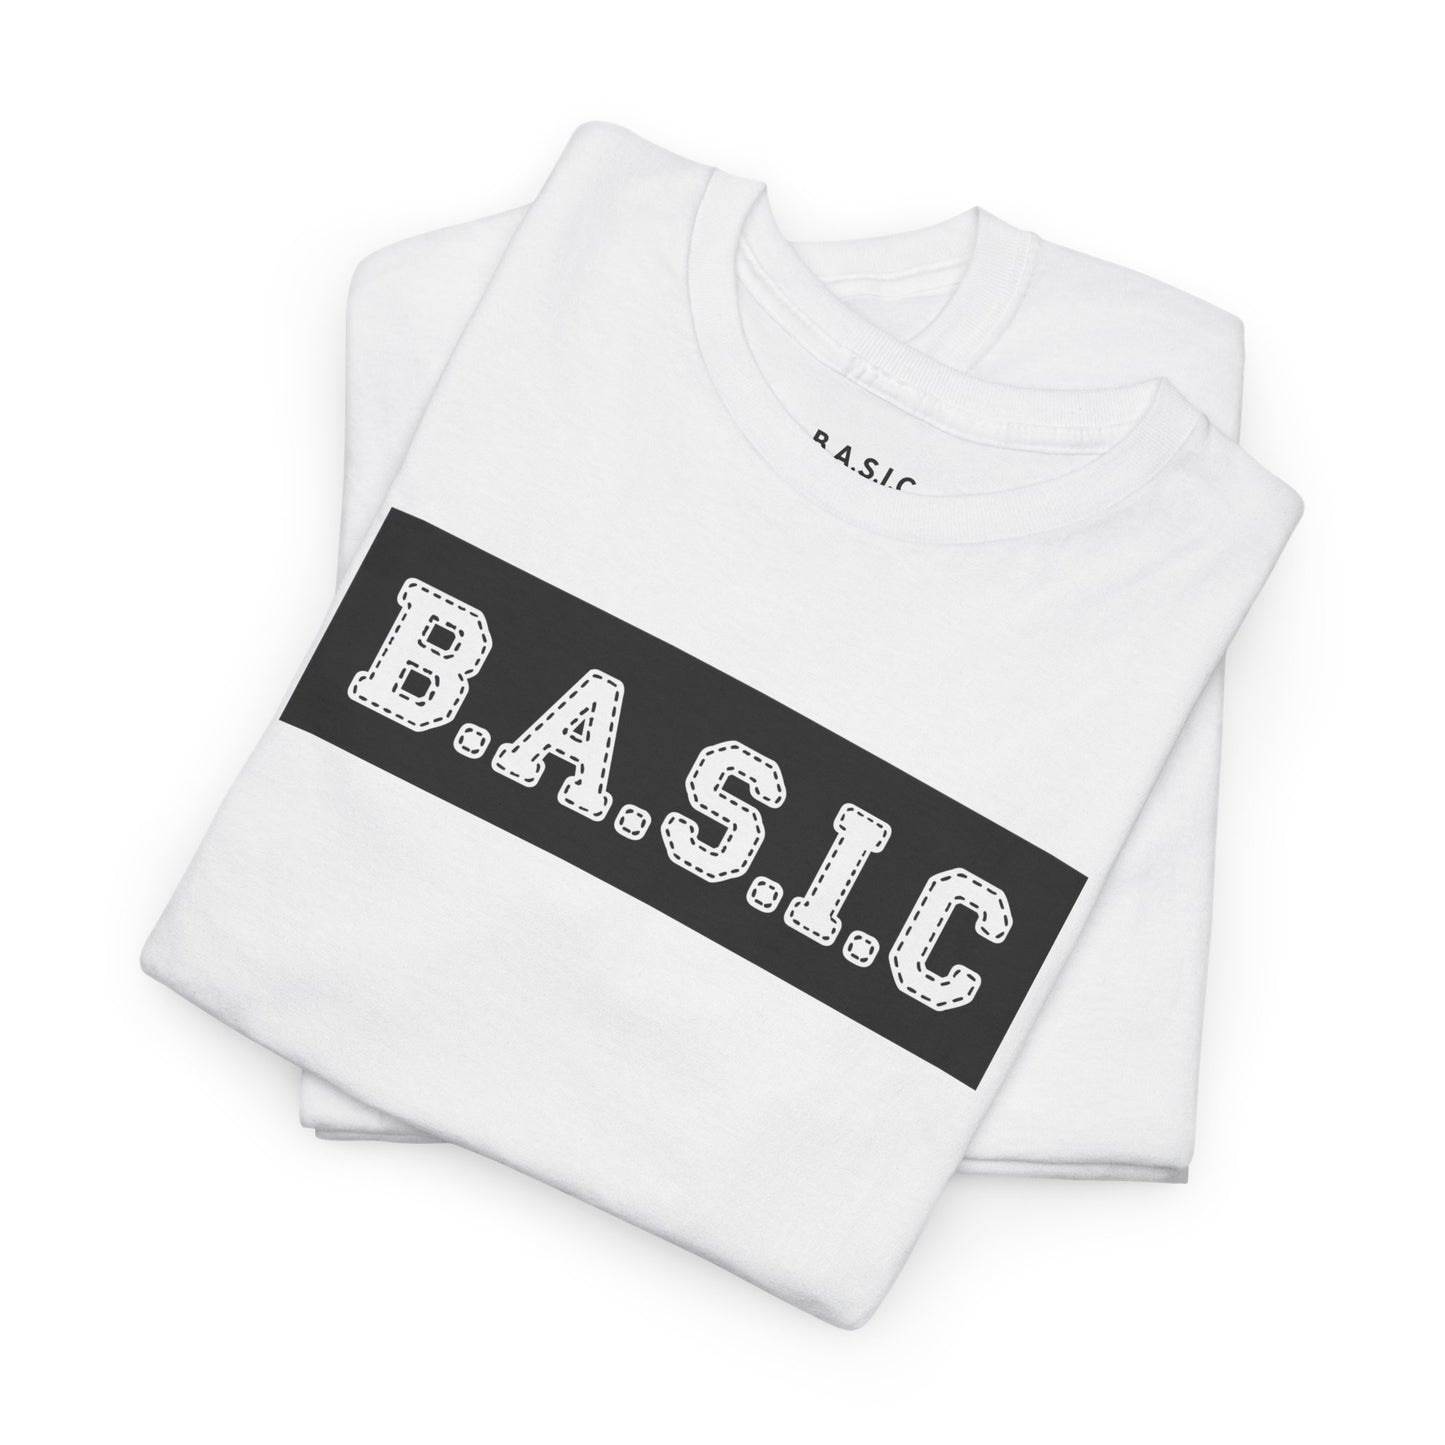 Unisex B.A.S.I.C "Stitched" T Shirt